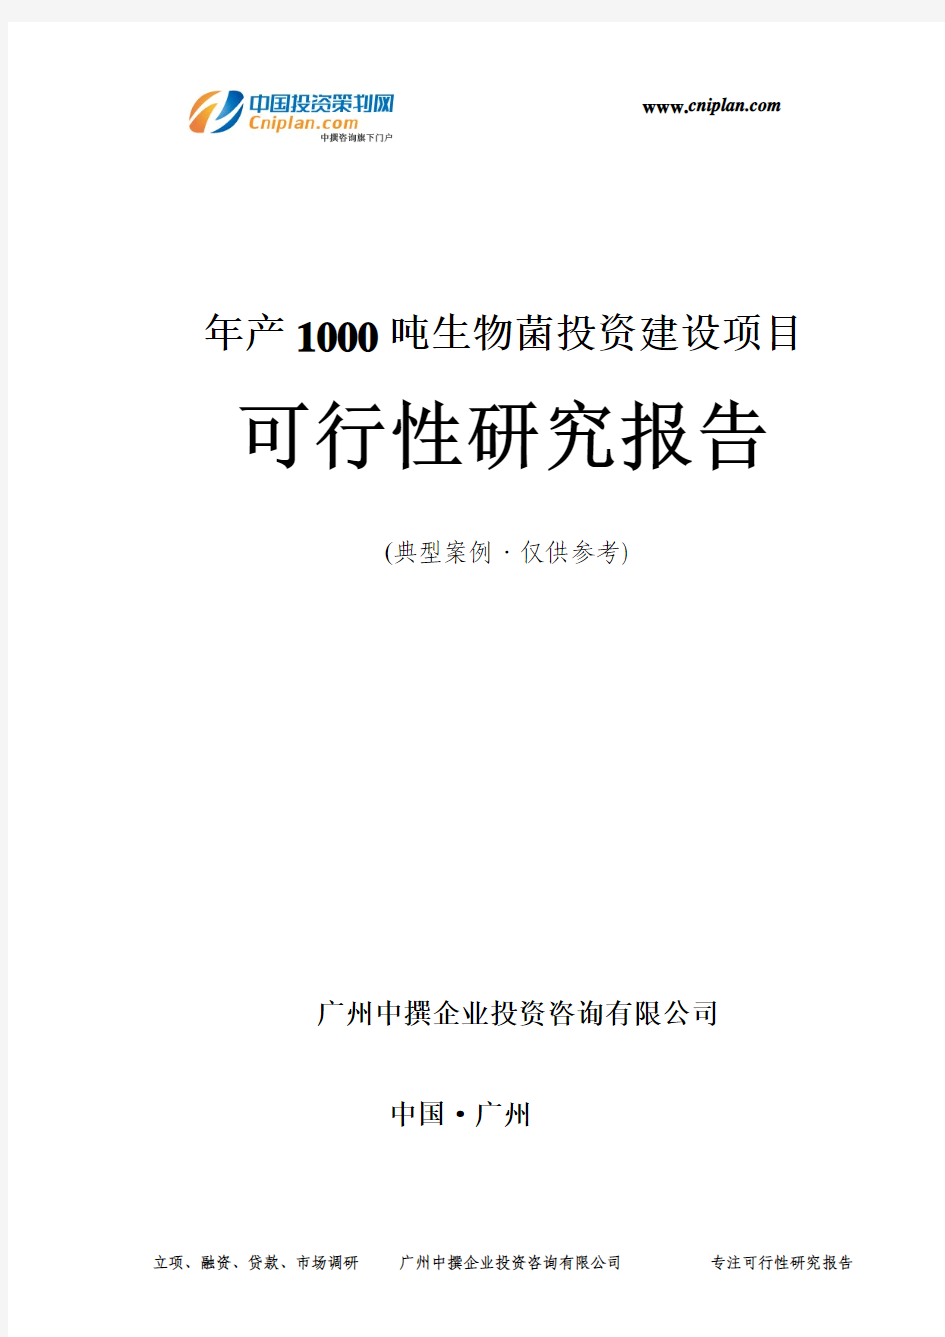 年产1000吨生物菌投资建设项目可行性研究报告-广州中撰咨询